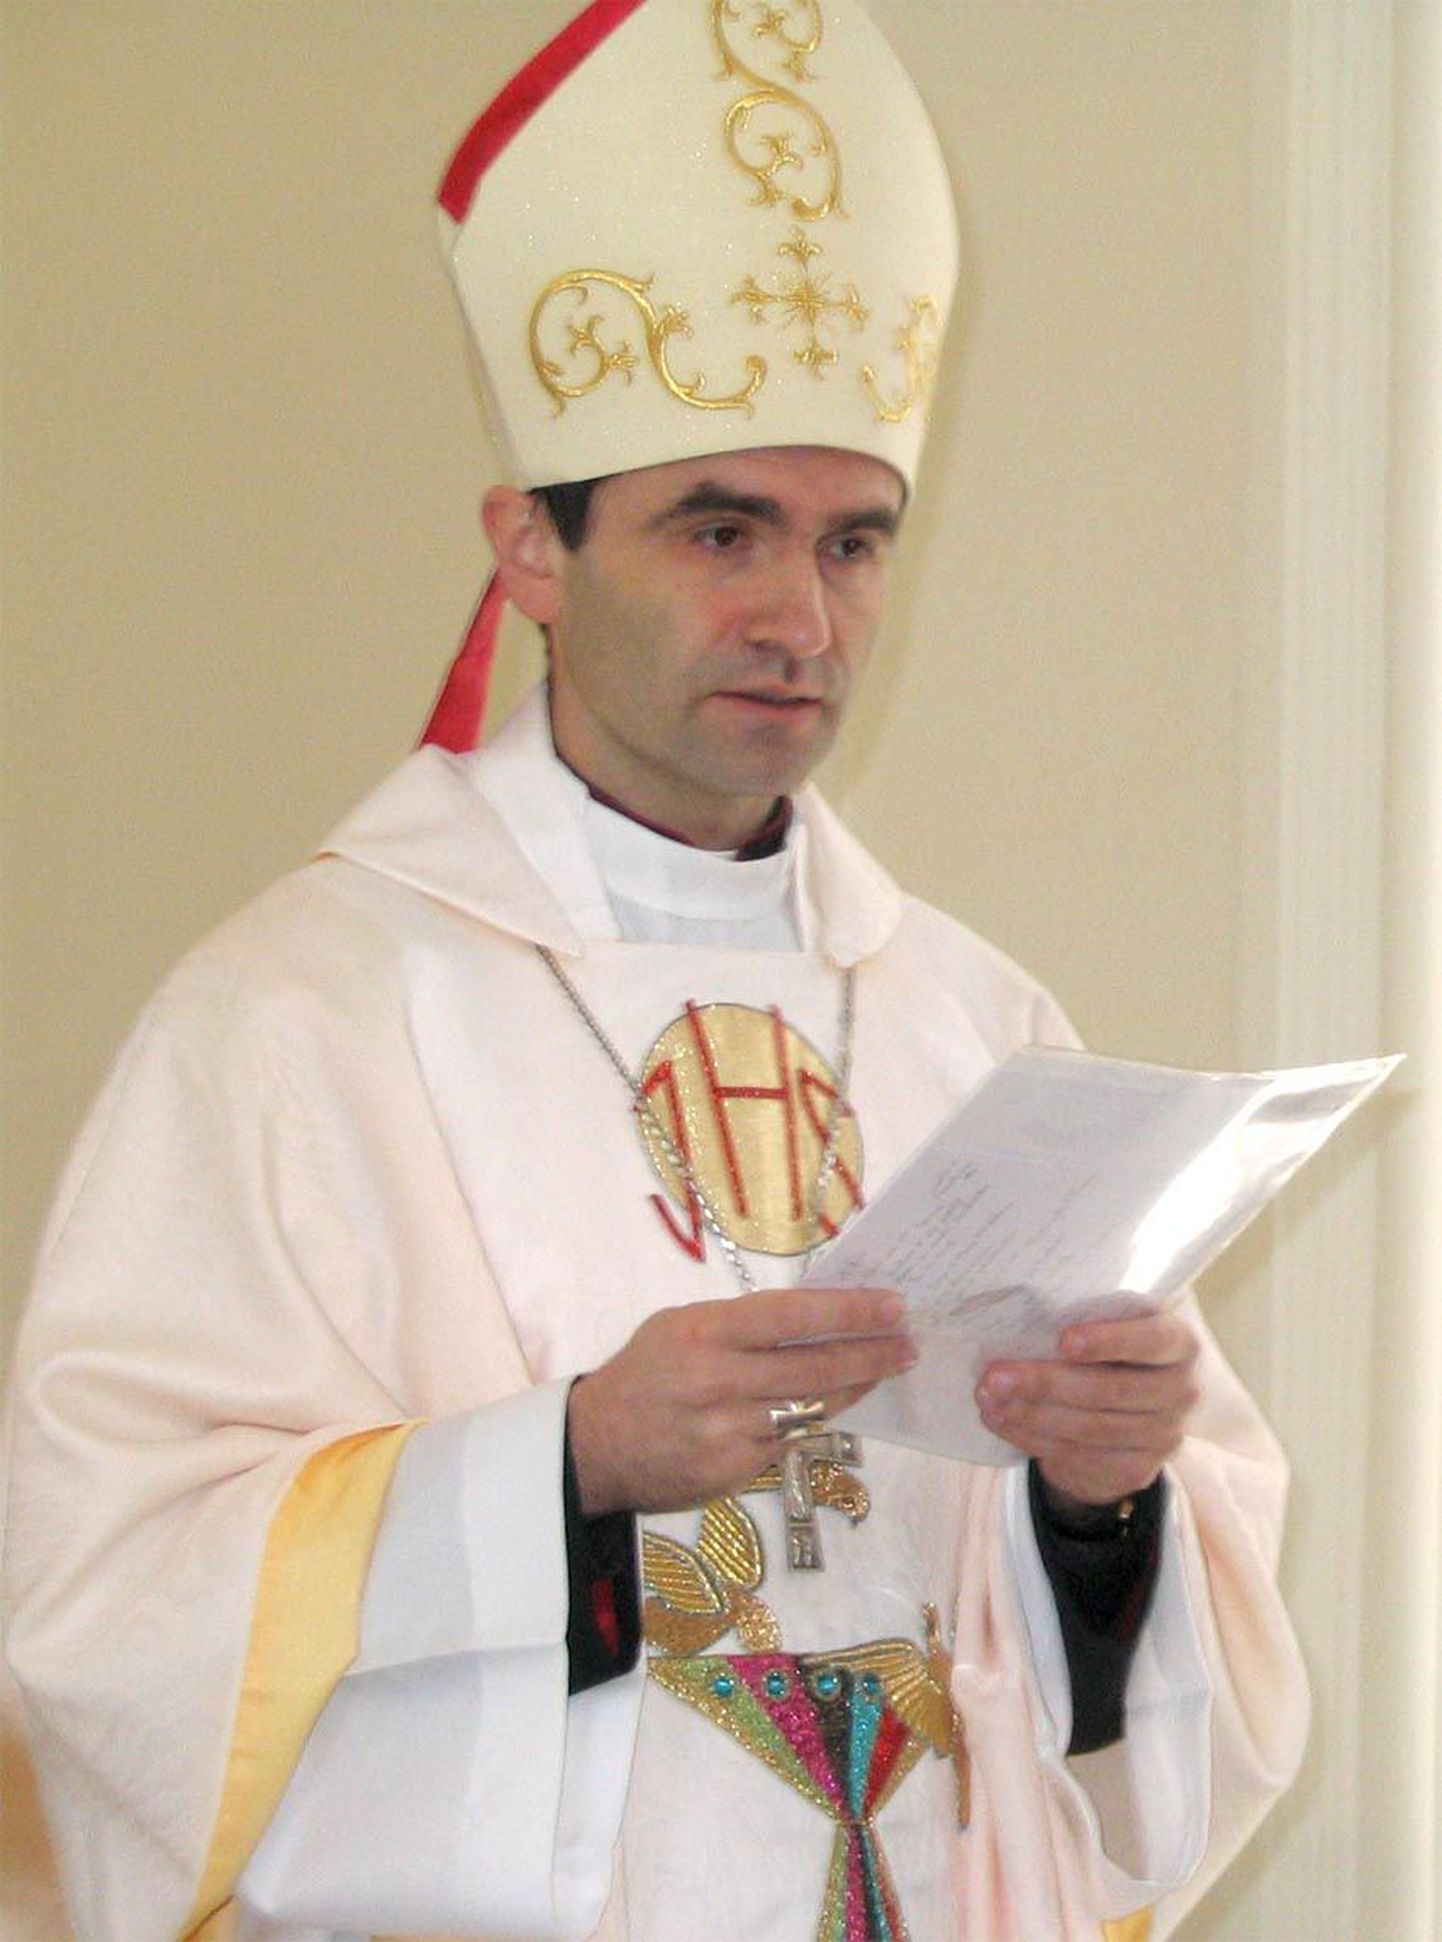 Eesti apostellik administraator piiskop Philippe Jourdan